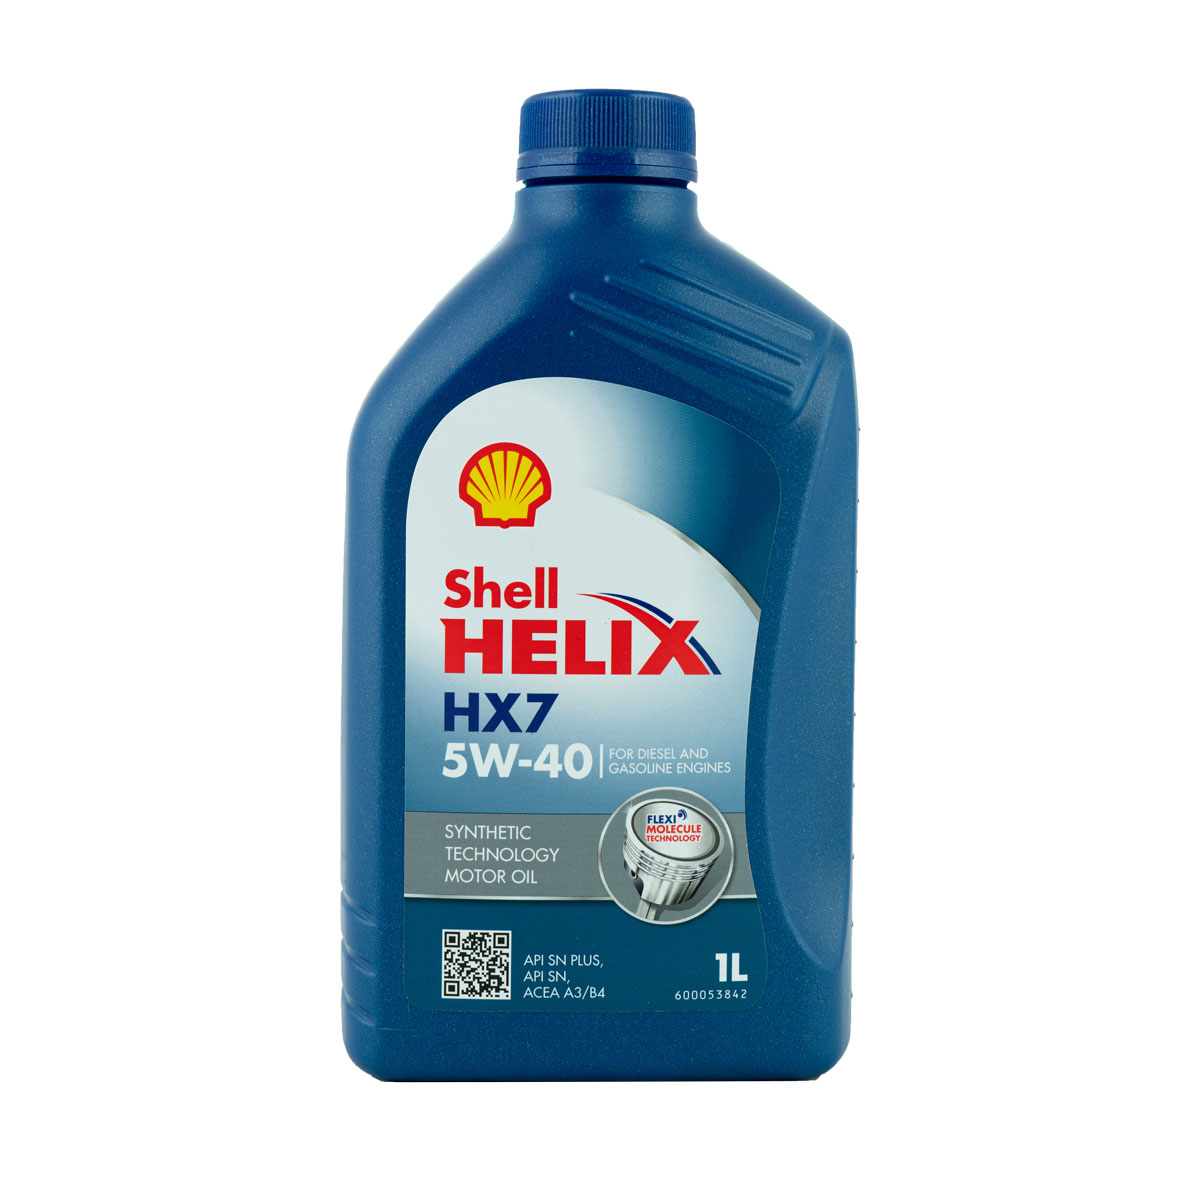 Shell Helix HX7 5W-40 Motoröl, 1l